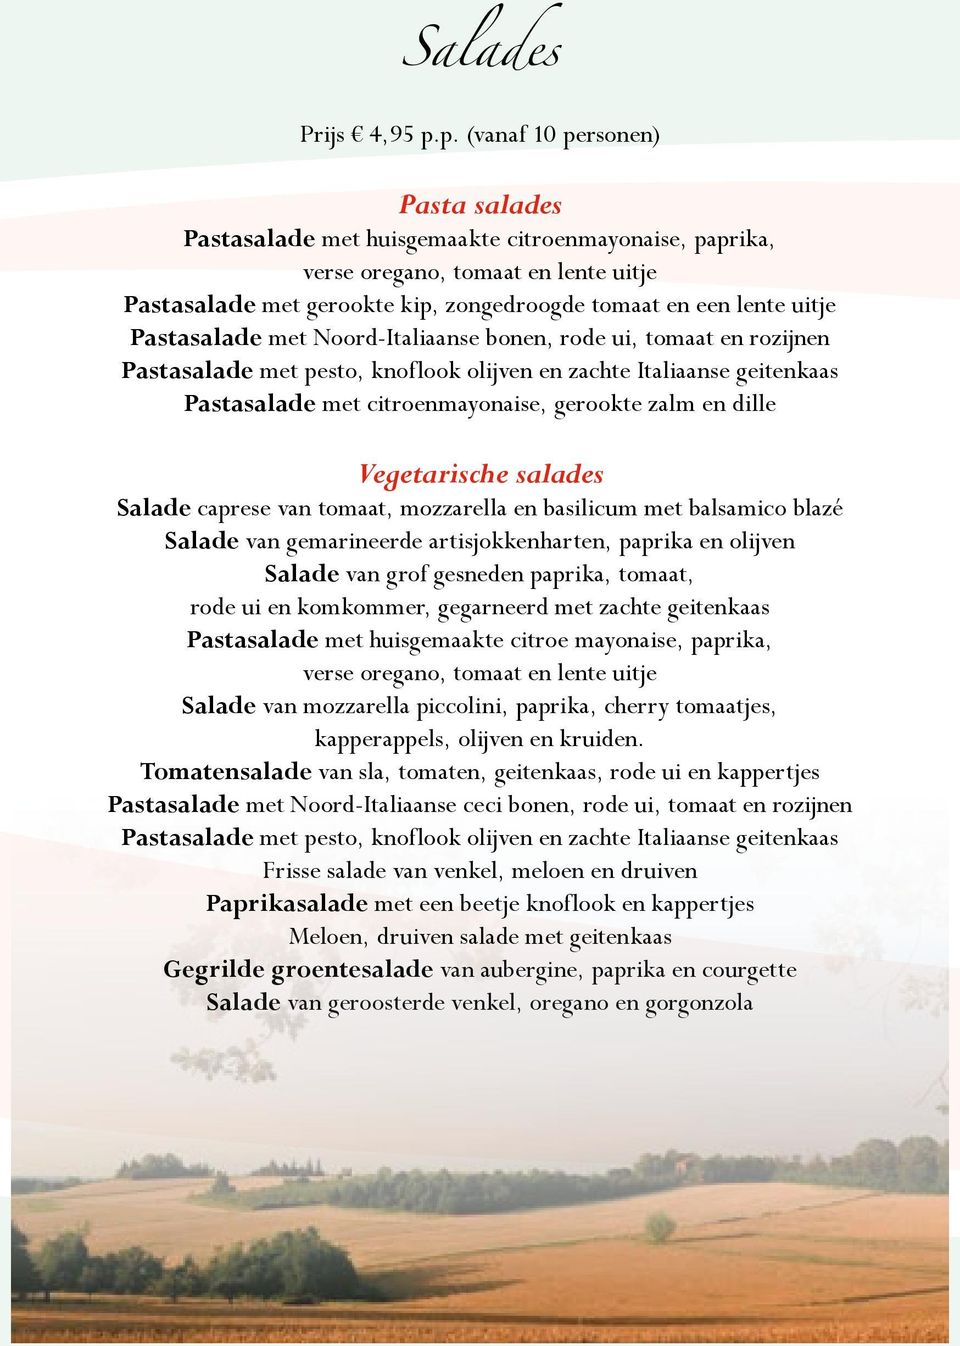 Pastasalade met Noord-Italiaanse bonen, rode ui, tomaat en rozijnen Pastasalade met pesto, knoflook olijven en zachte Italiaanse geitenkaas Pastasalade met citroenmayonaise, gerookte zalm en dille